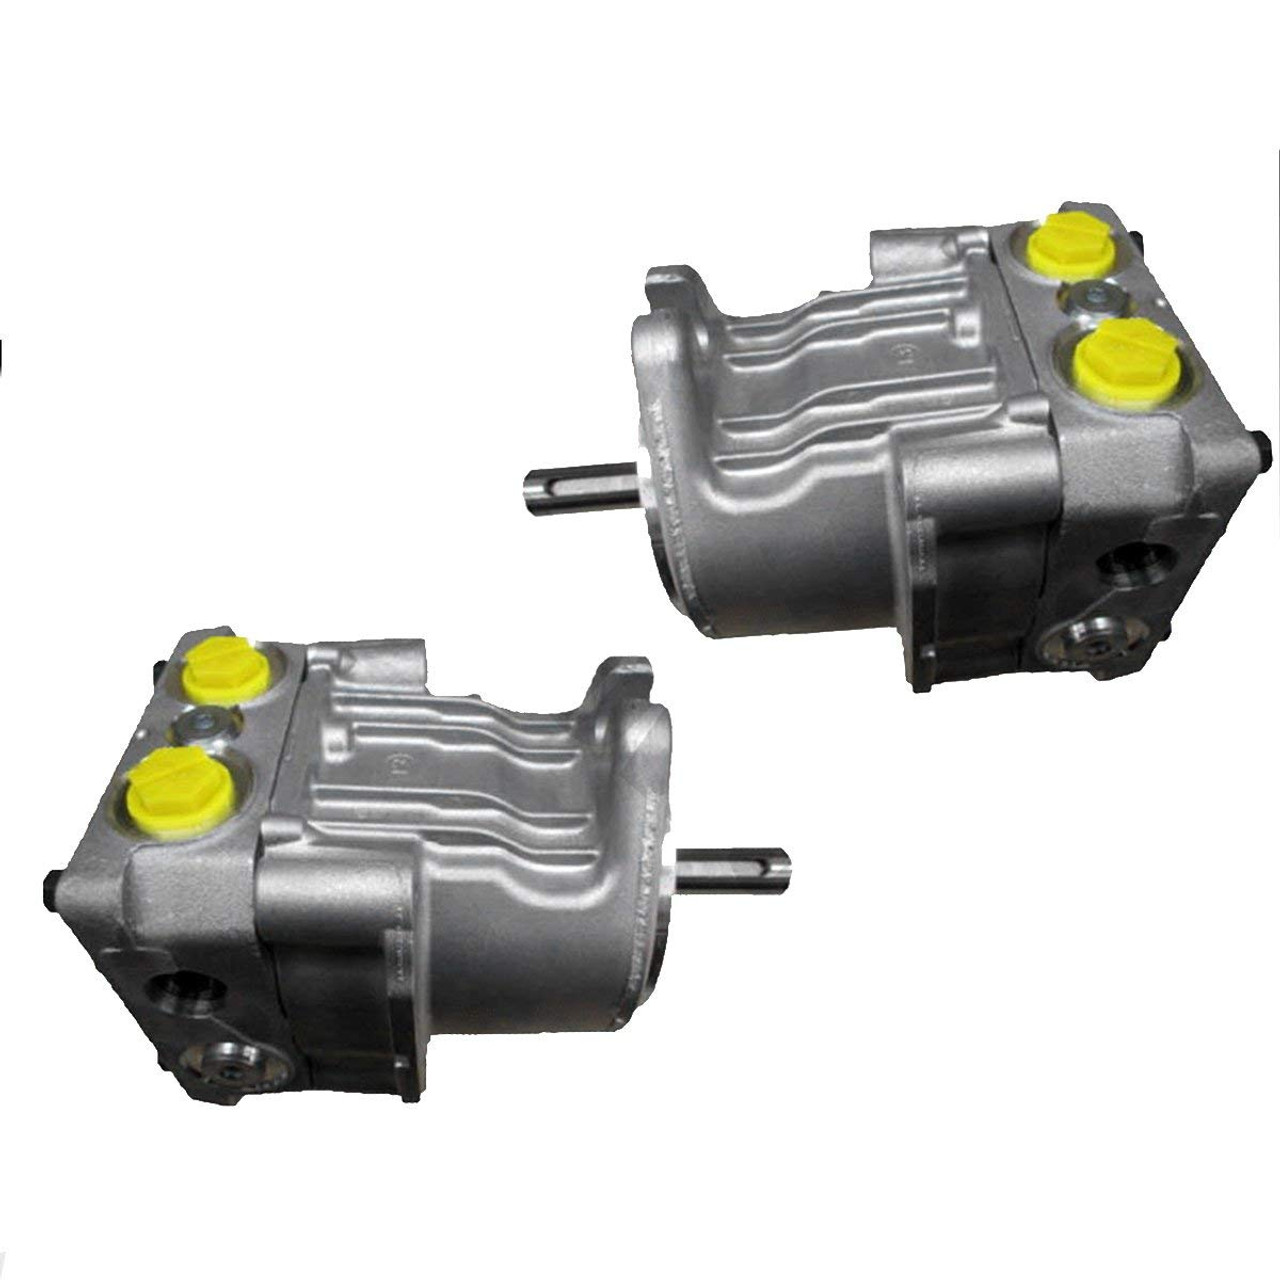 Hydro Gear Pump (Right & Left) Kit 10cc / Toro GrandStand 36" Deck Mower & Others / PE-1KQQ-DN1X-XXXX, PE-1HQQ-DP1X-XXXX